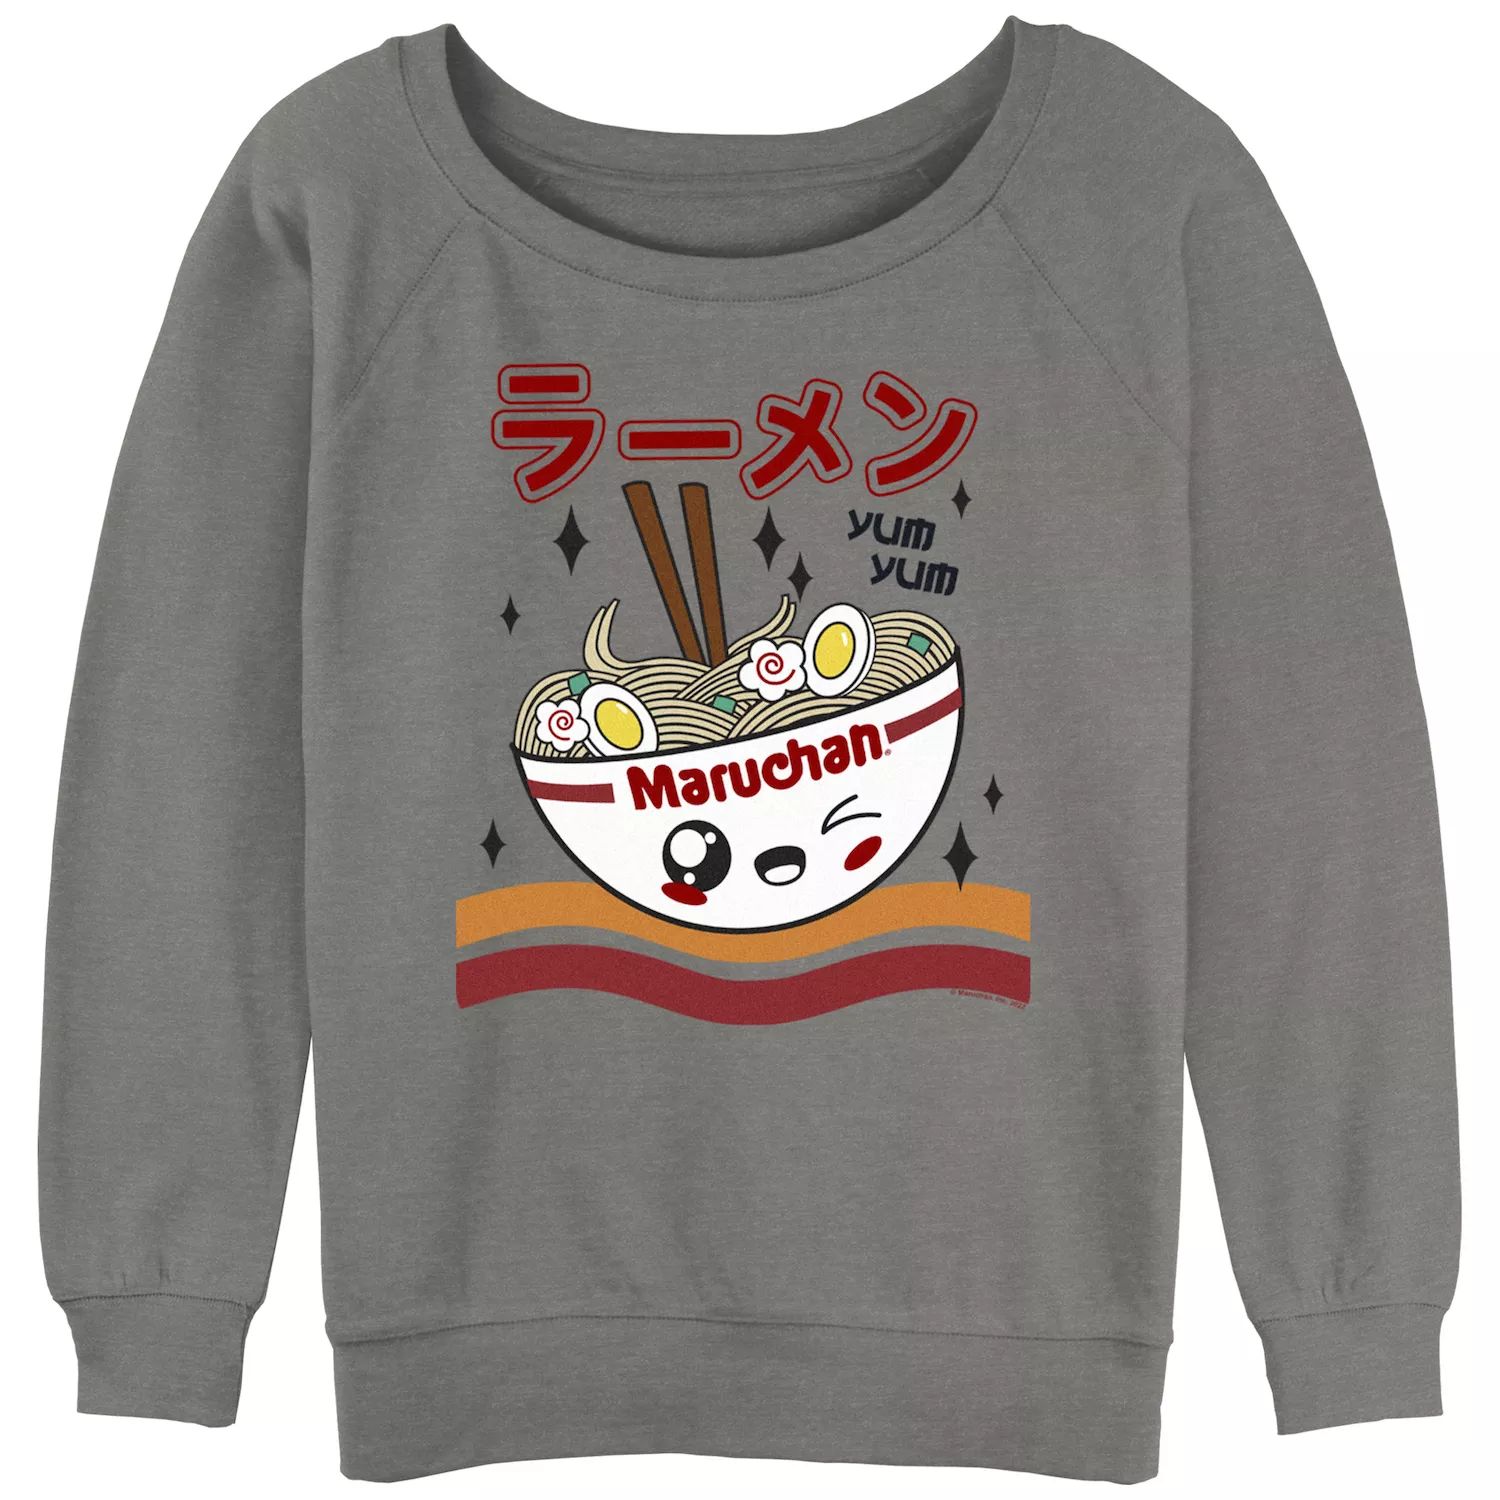 Maruchan Kawai Bowl Yum Yum для юниоров, махровый пуловер с напуском Licensed Character